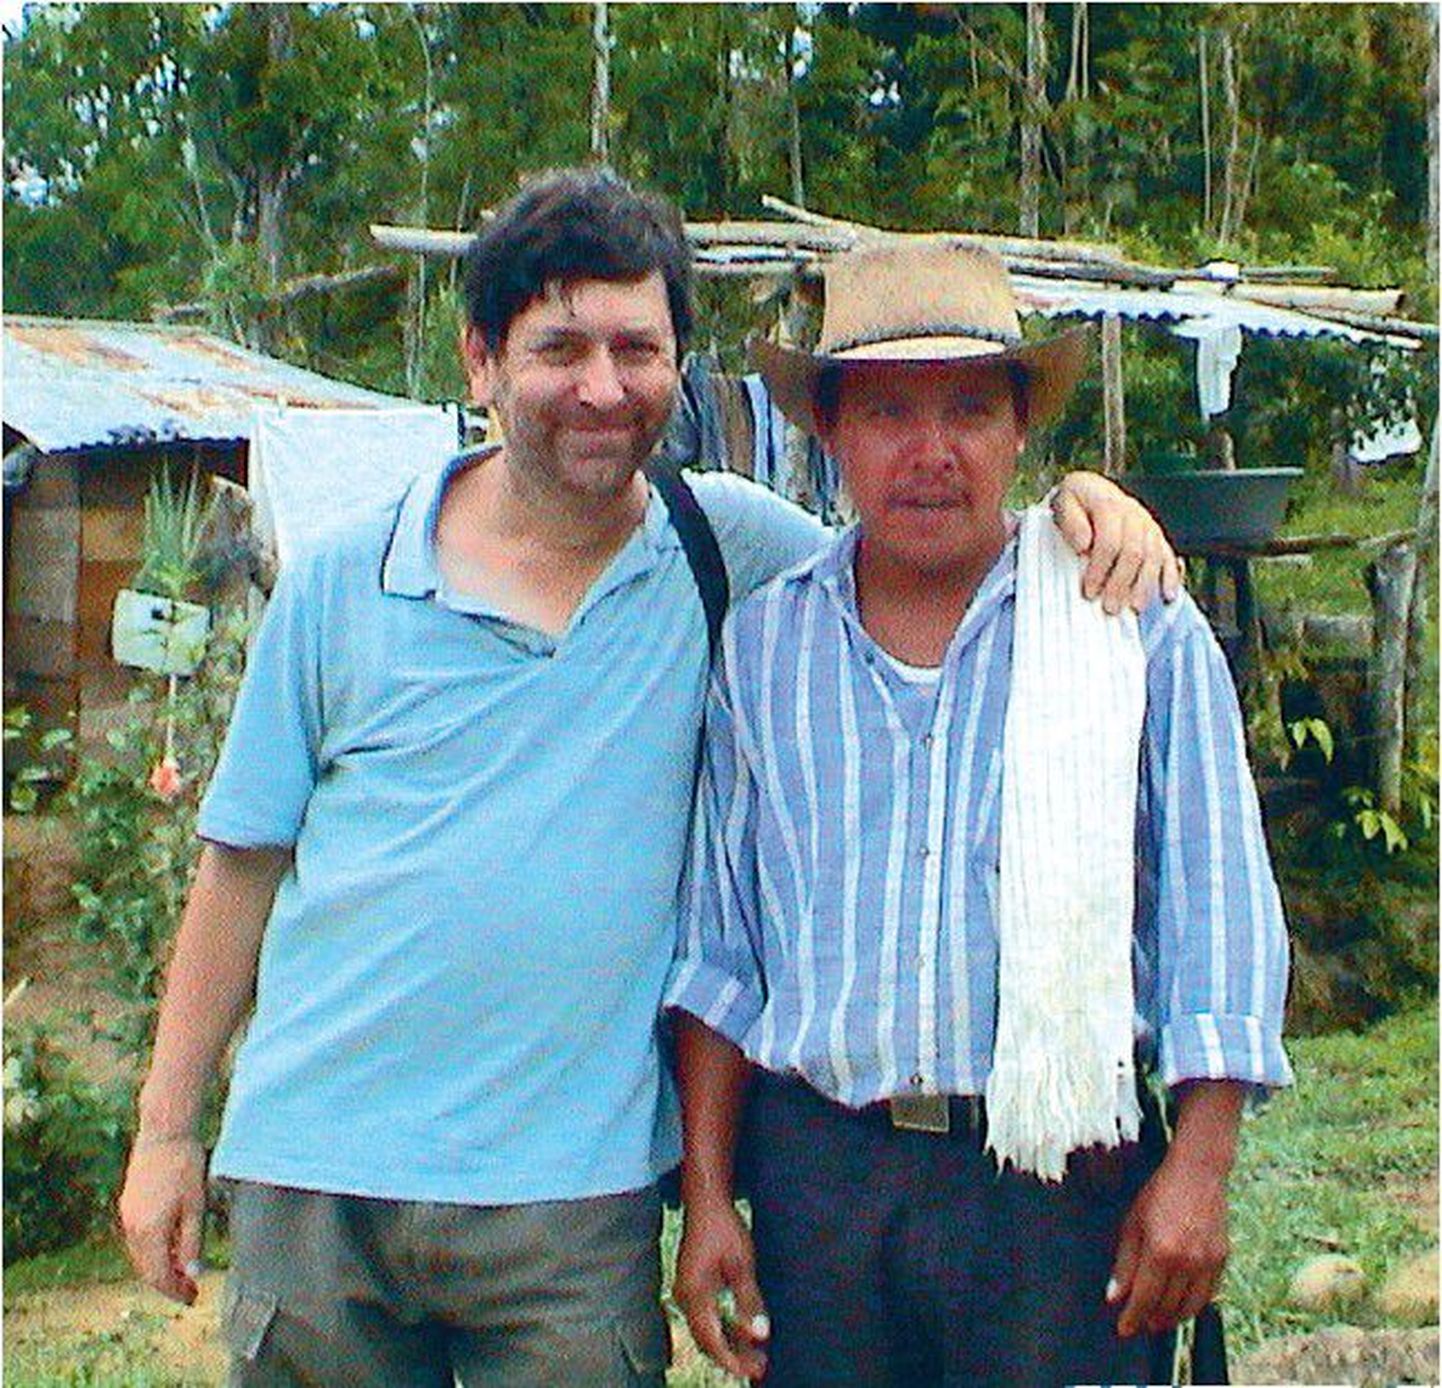 Guatemala mehed on väga perekesksed ega hooli tööst ja karjäärist.